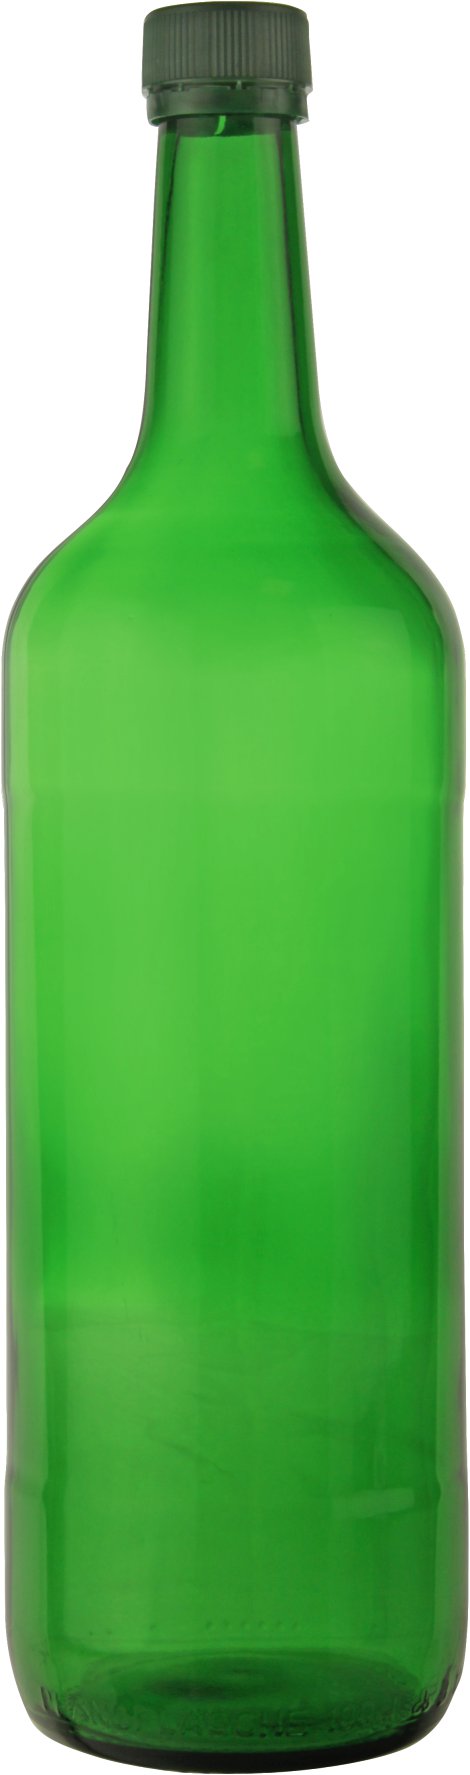 Mostfruchtflasche mit Verschluss 1 l 6 Stk.